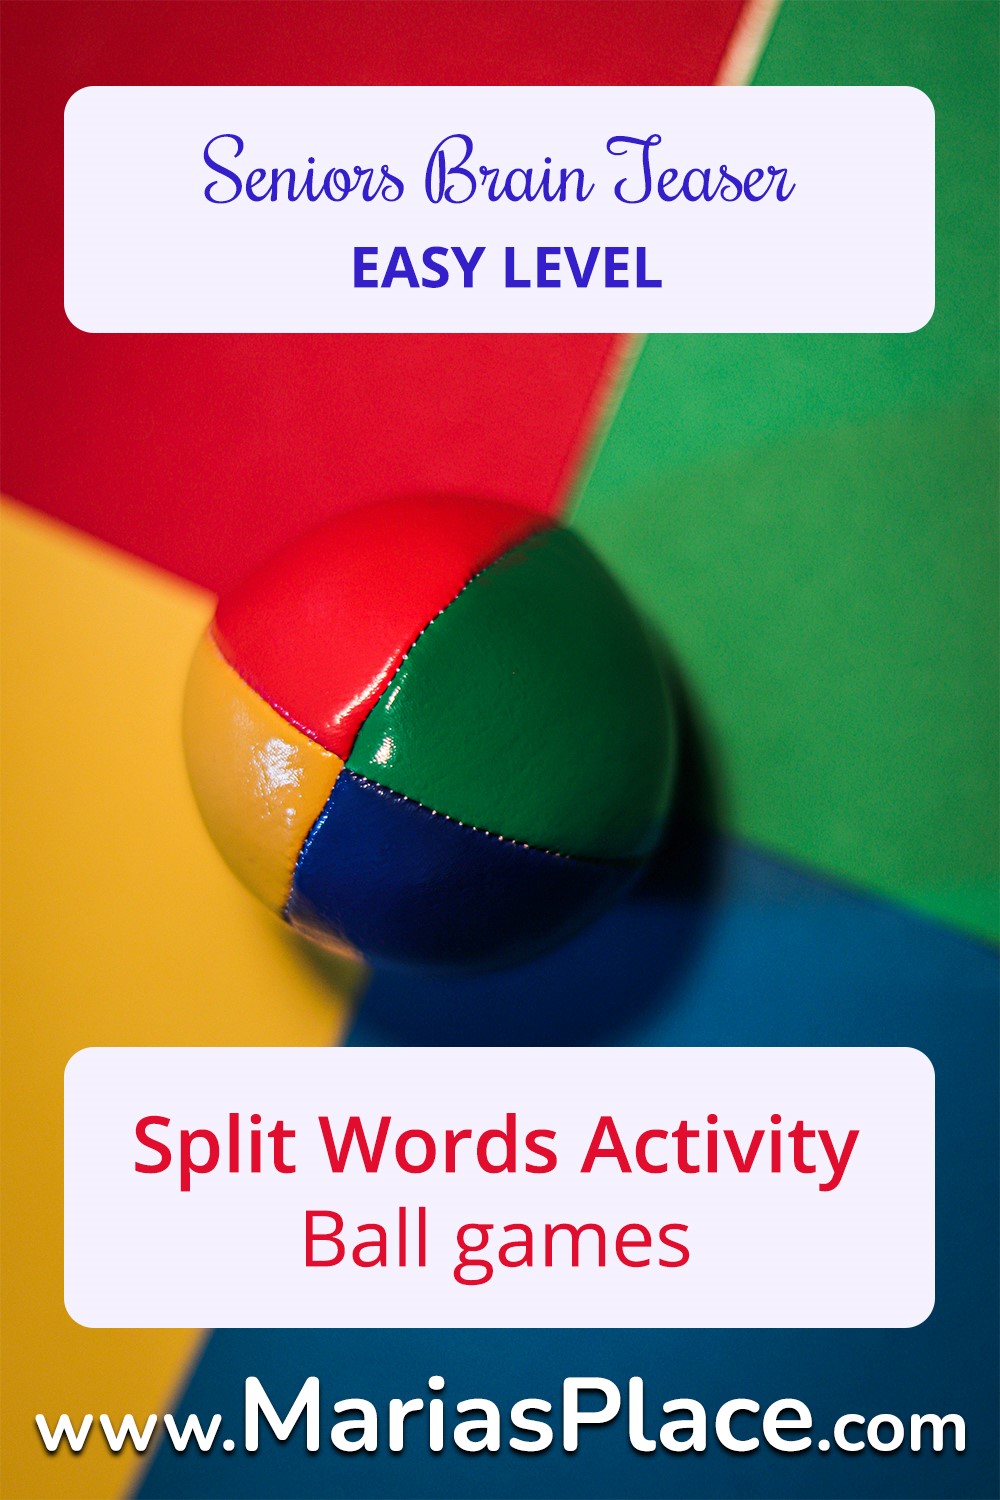 Split Words, Ball Games